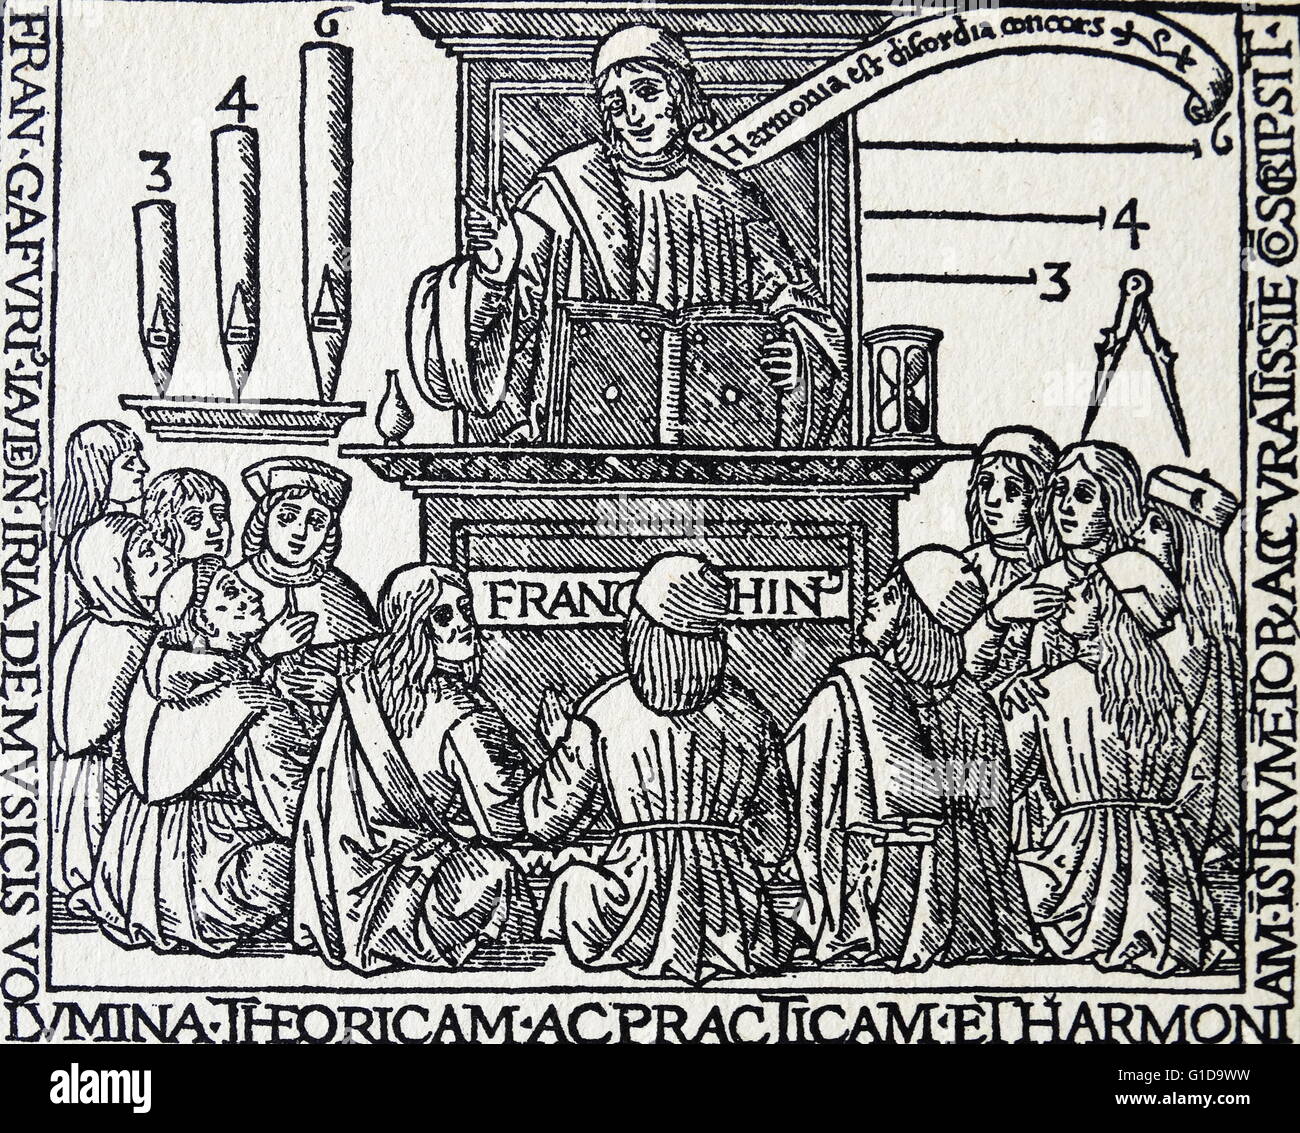 De Harmonia Musicorum Instrumentorum; Franchinus Gaffurius unter zwölf Musikschüler. 1496. Franchinus Gaffurius (Franchino Gaffurio; 14 Januar 1451 – 25 Juni 1522) war ein italienischer Musiktheoretiker und Komponist der Renaissance Stockfoto